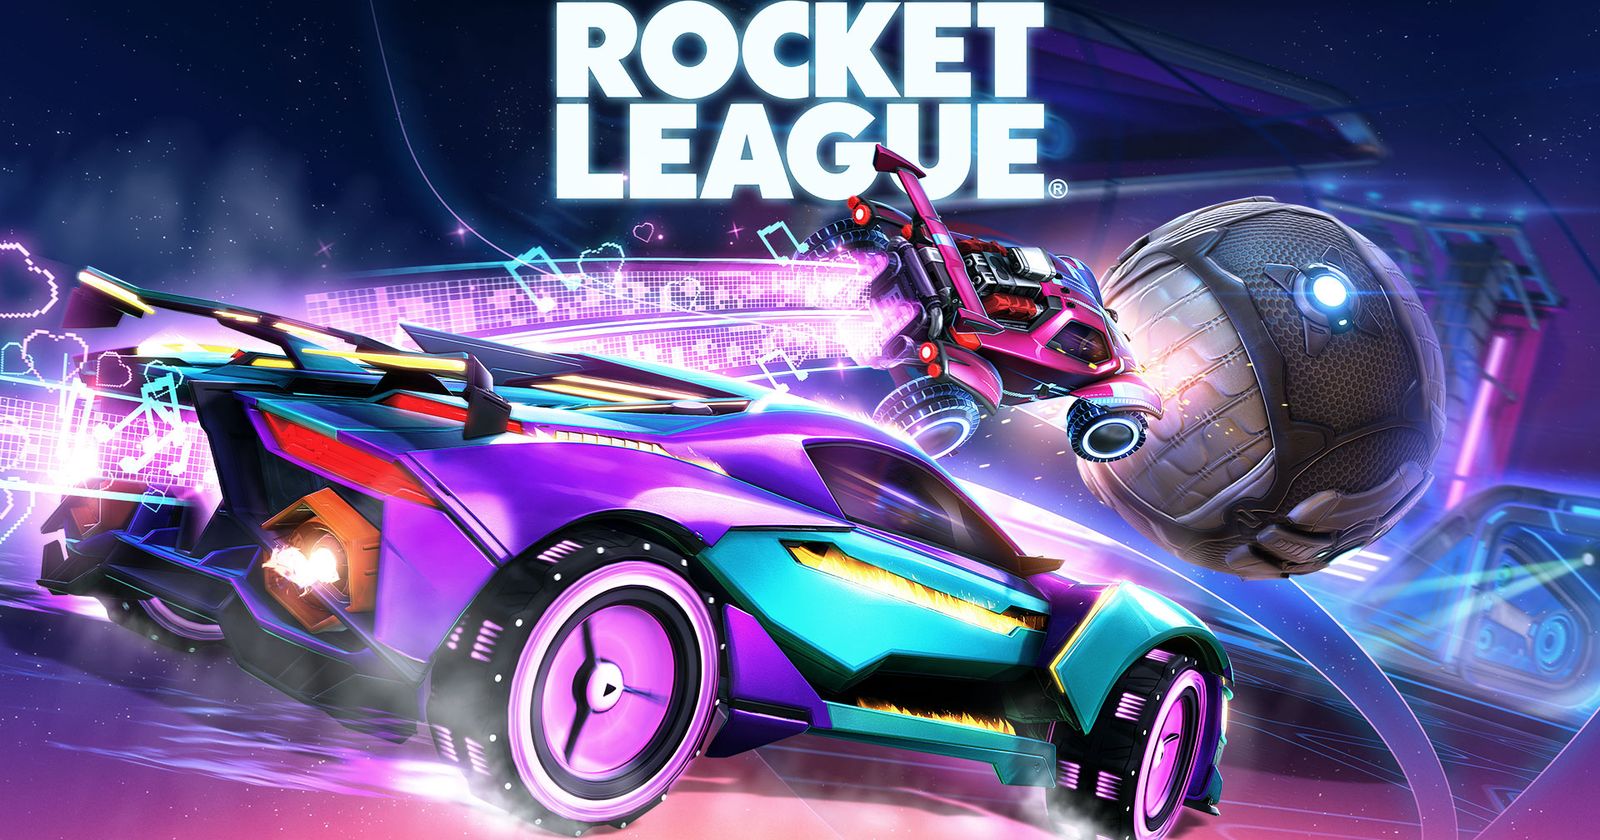 Rocket League 3v3 Online tournament - West - Overview